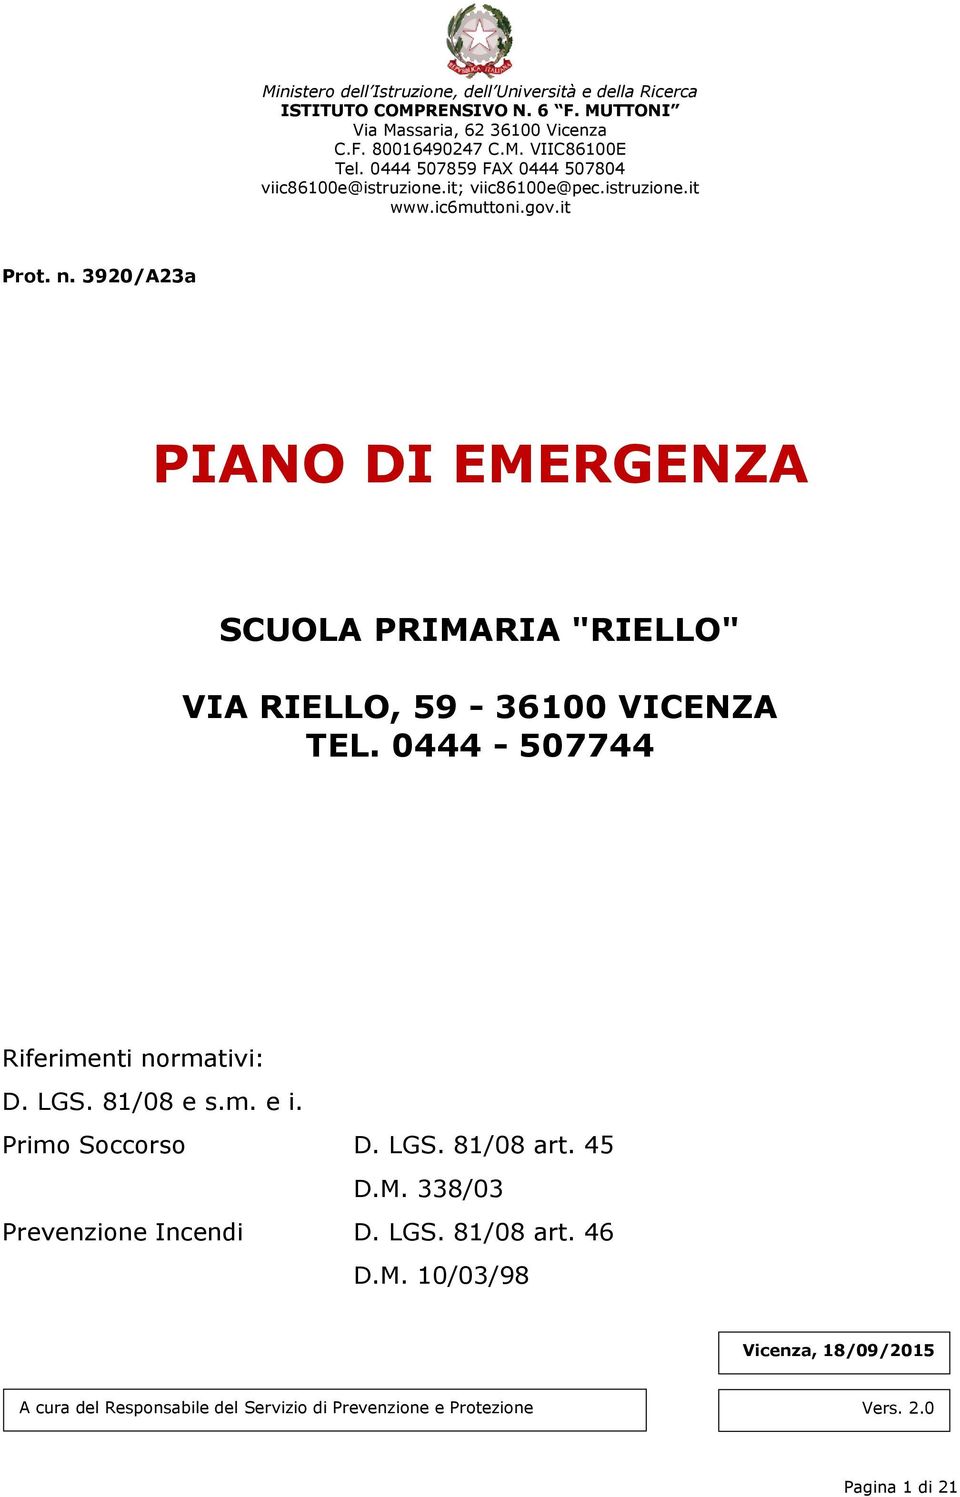 3920/A23a PIANO DI EMERGENZA SCUOLA PRIMARIA "RIELLO" VIA RIELLO, 59-36100 VICENZA TEL. 0444-507744 Riferimenti normativi: D. LGS. 81/08 e s.m. e i.